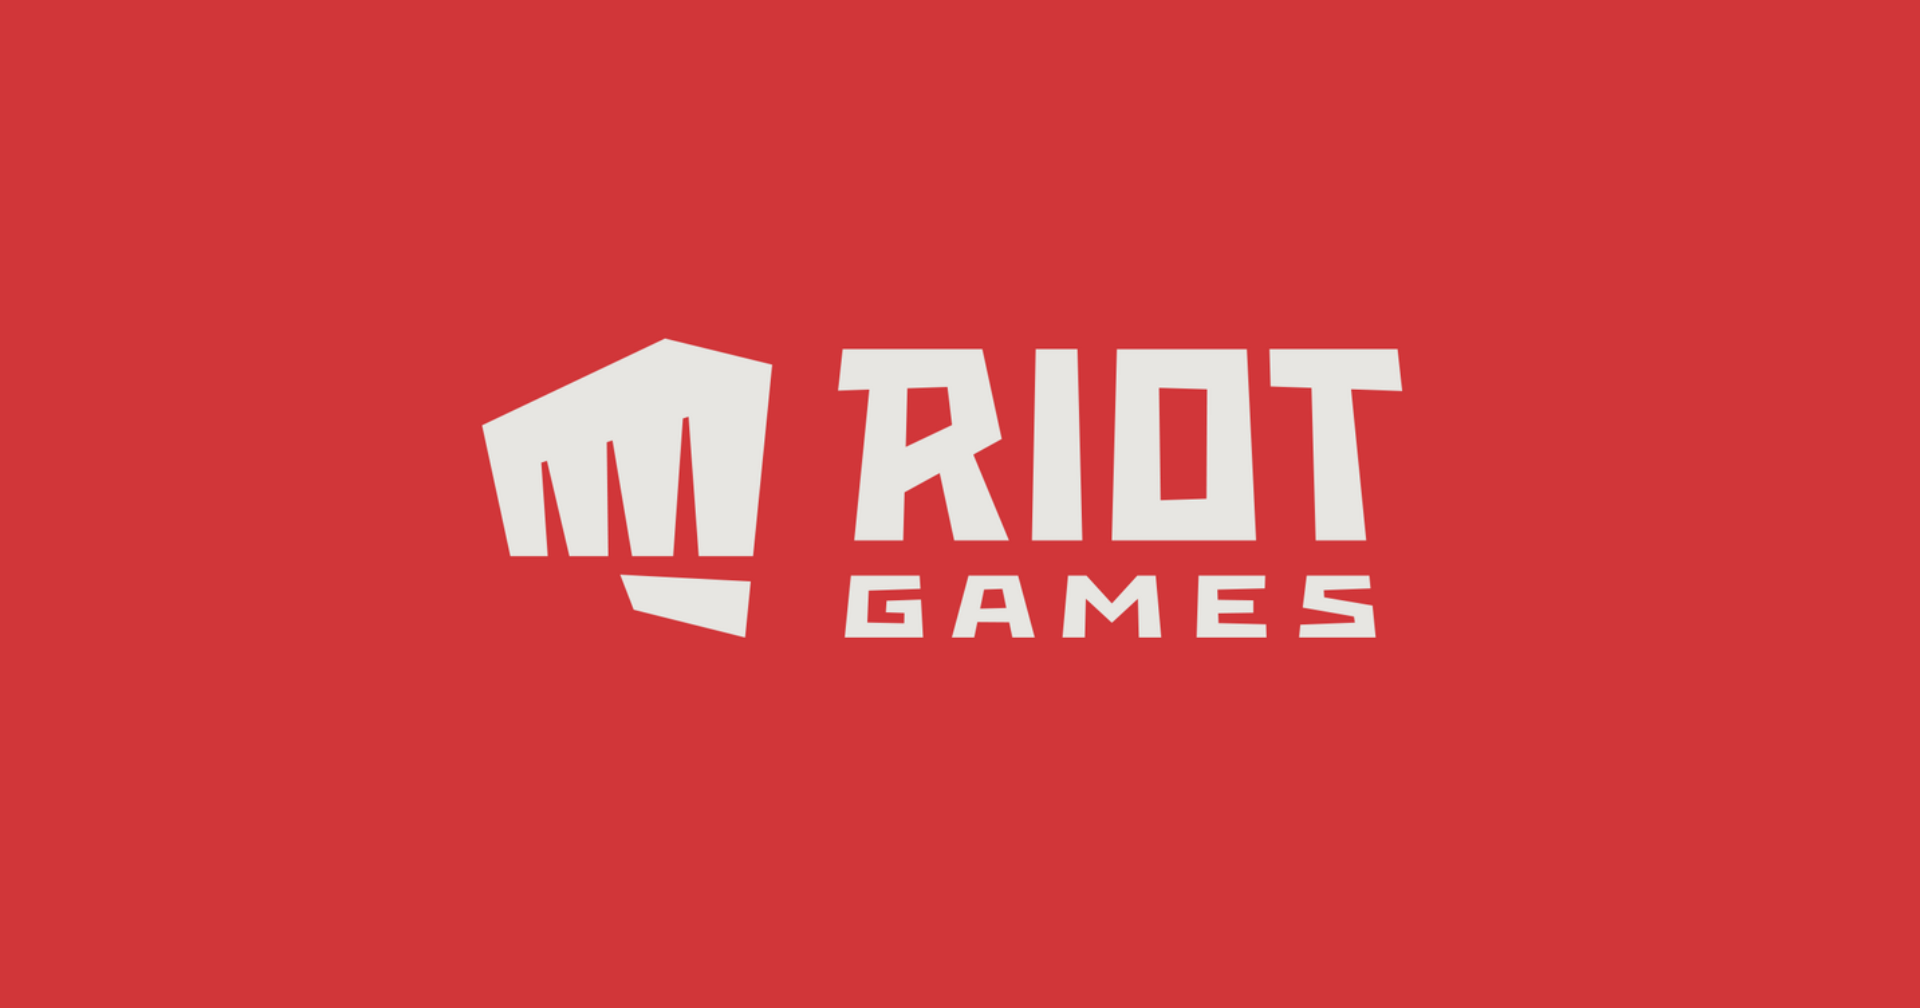 Riot Games ได้อดีตผู้บริหาร Netflix มาร่วมงาน หวังปั้นงานสายบันเทิง